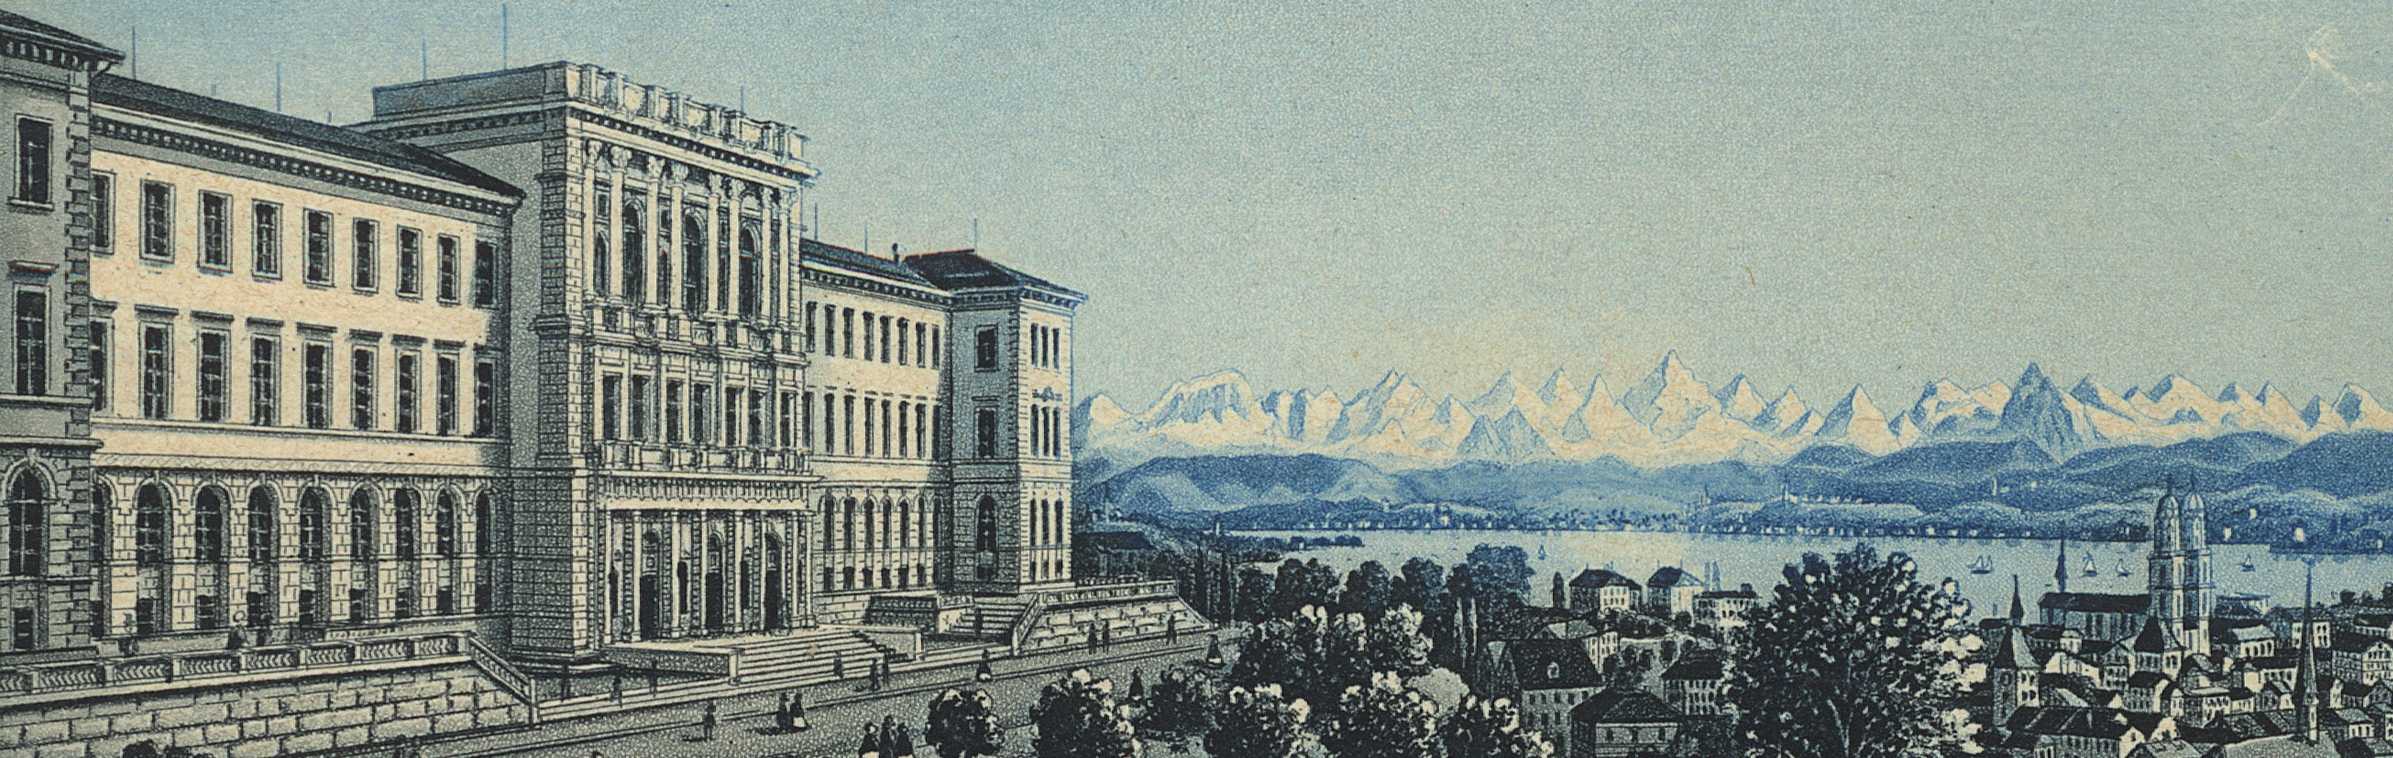 Das ETH Zürich Hauptgebäude im 19. Jahrhundert 